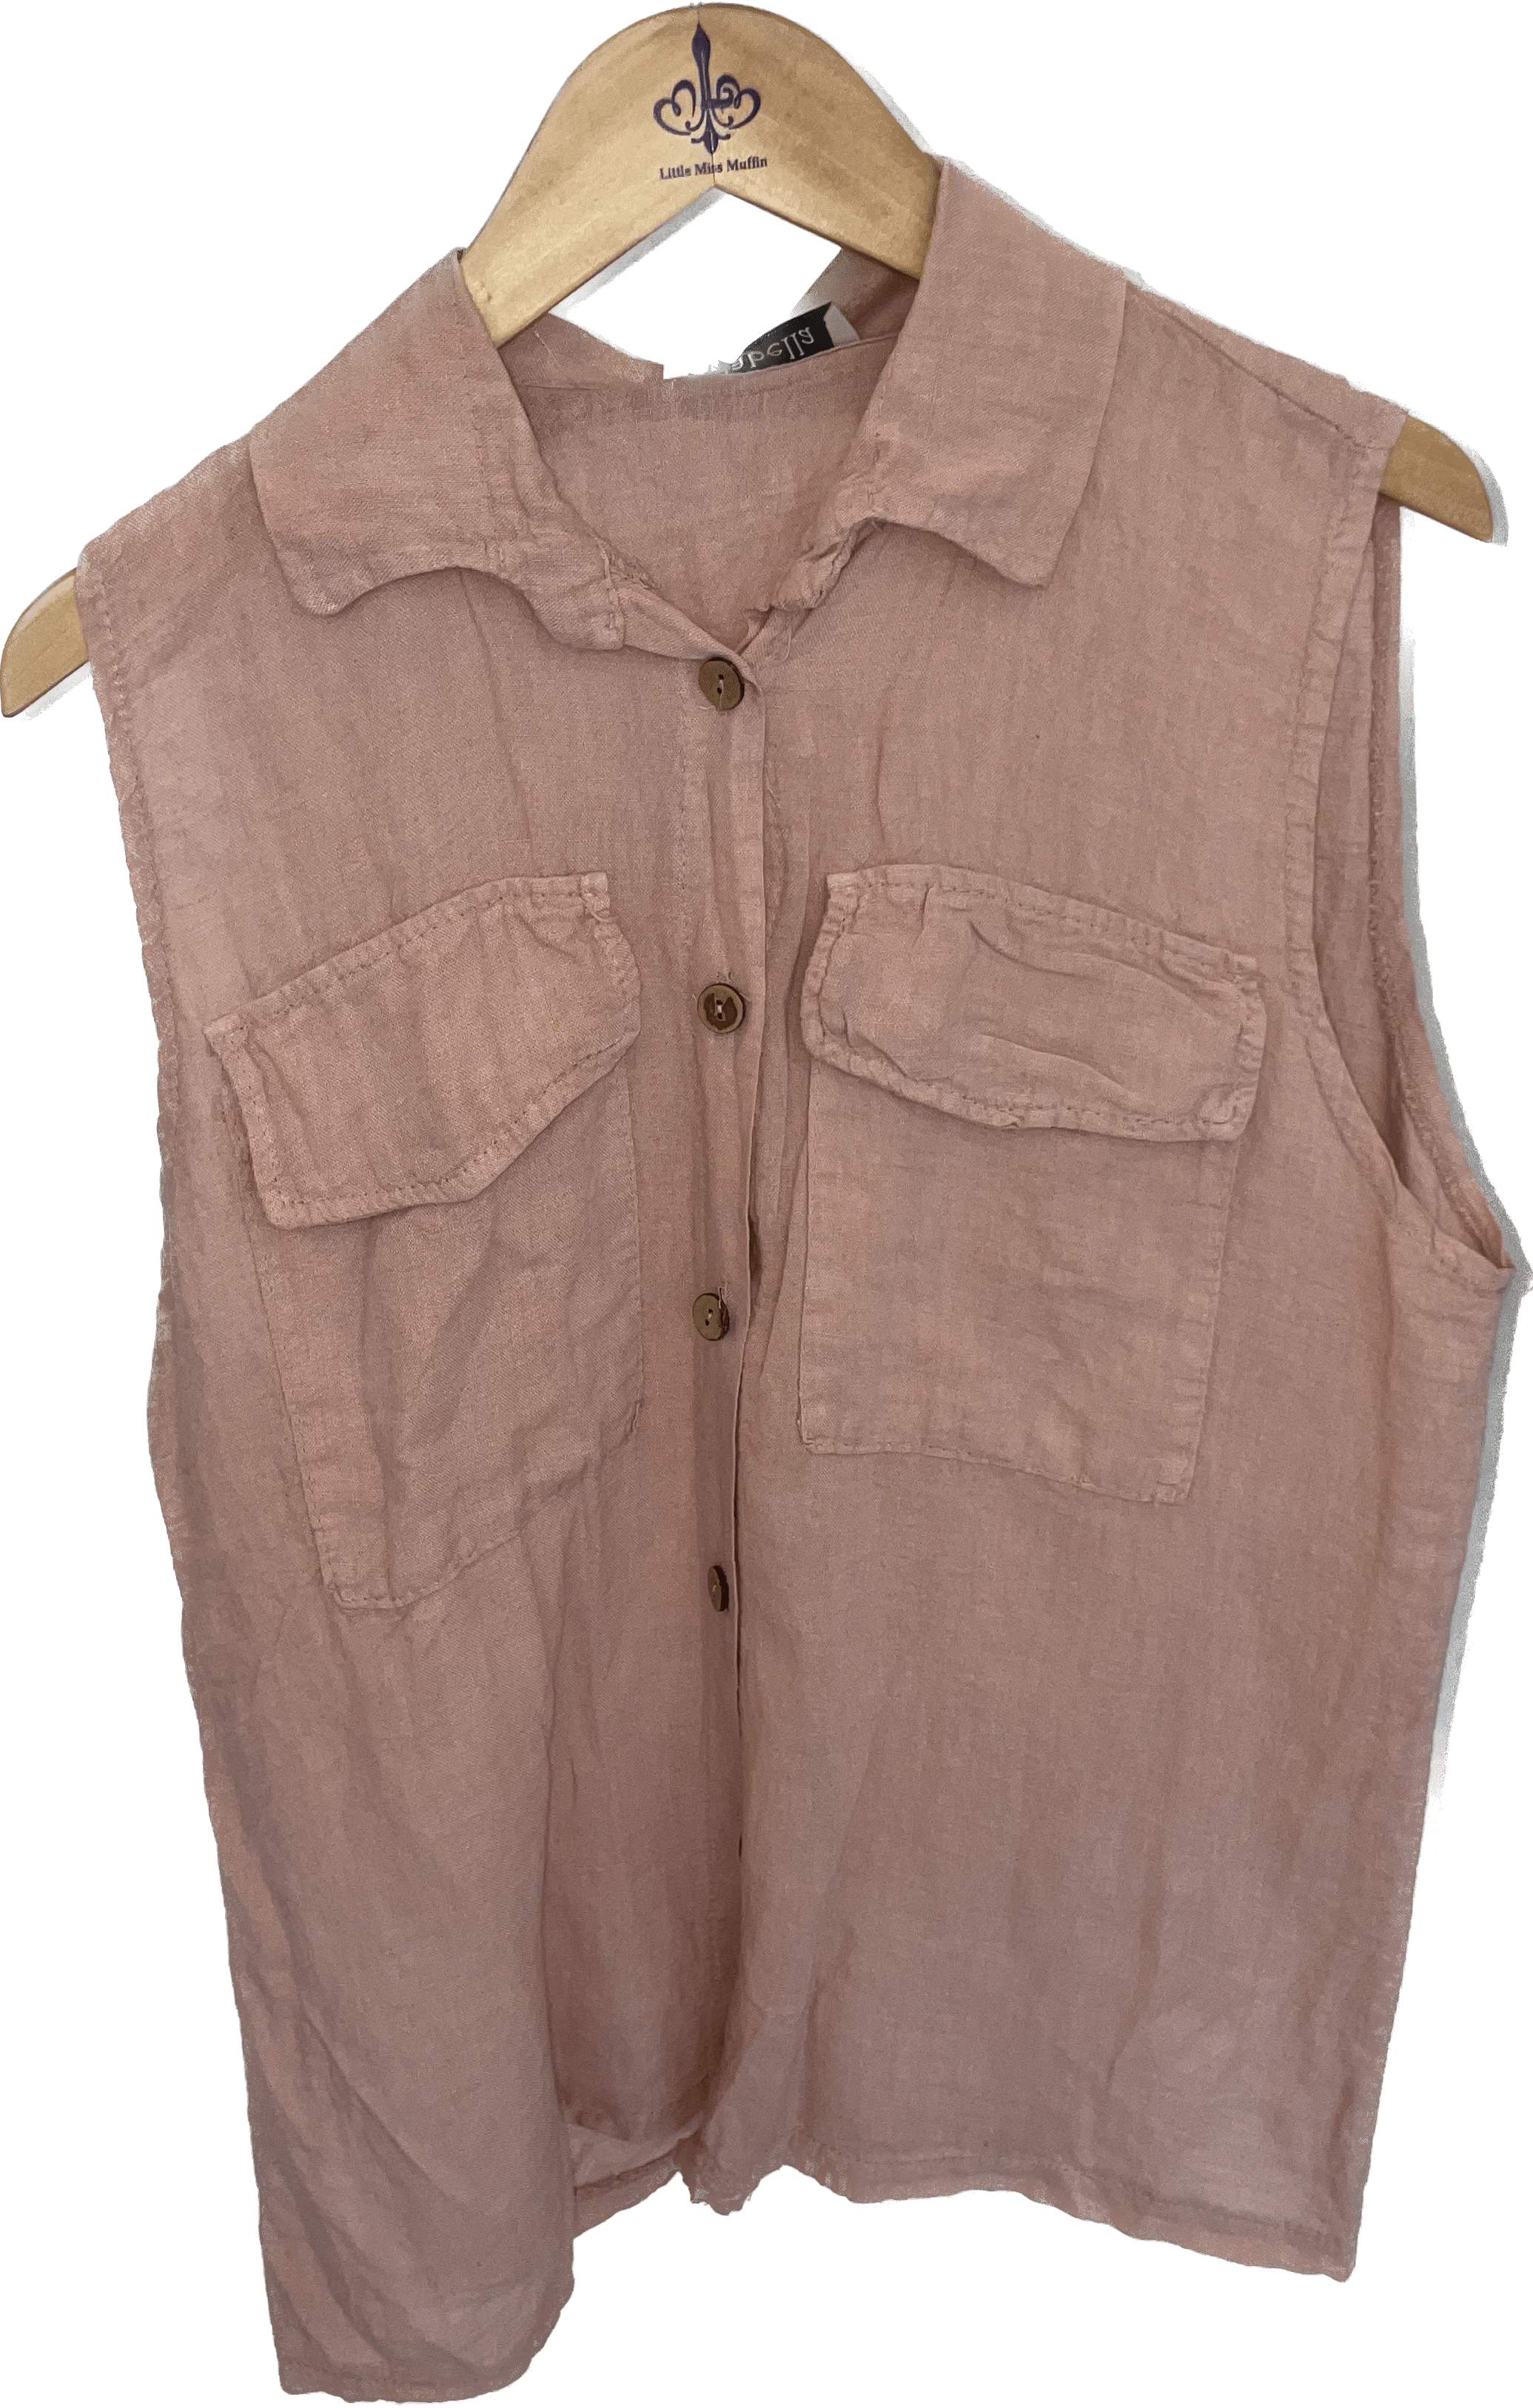 Oro Bonito Oro Bonito Sleeveless Linen Camp Shirt - Little Miss Muffin Children & Home